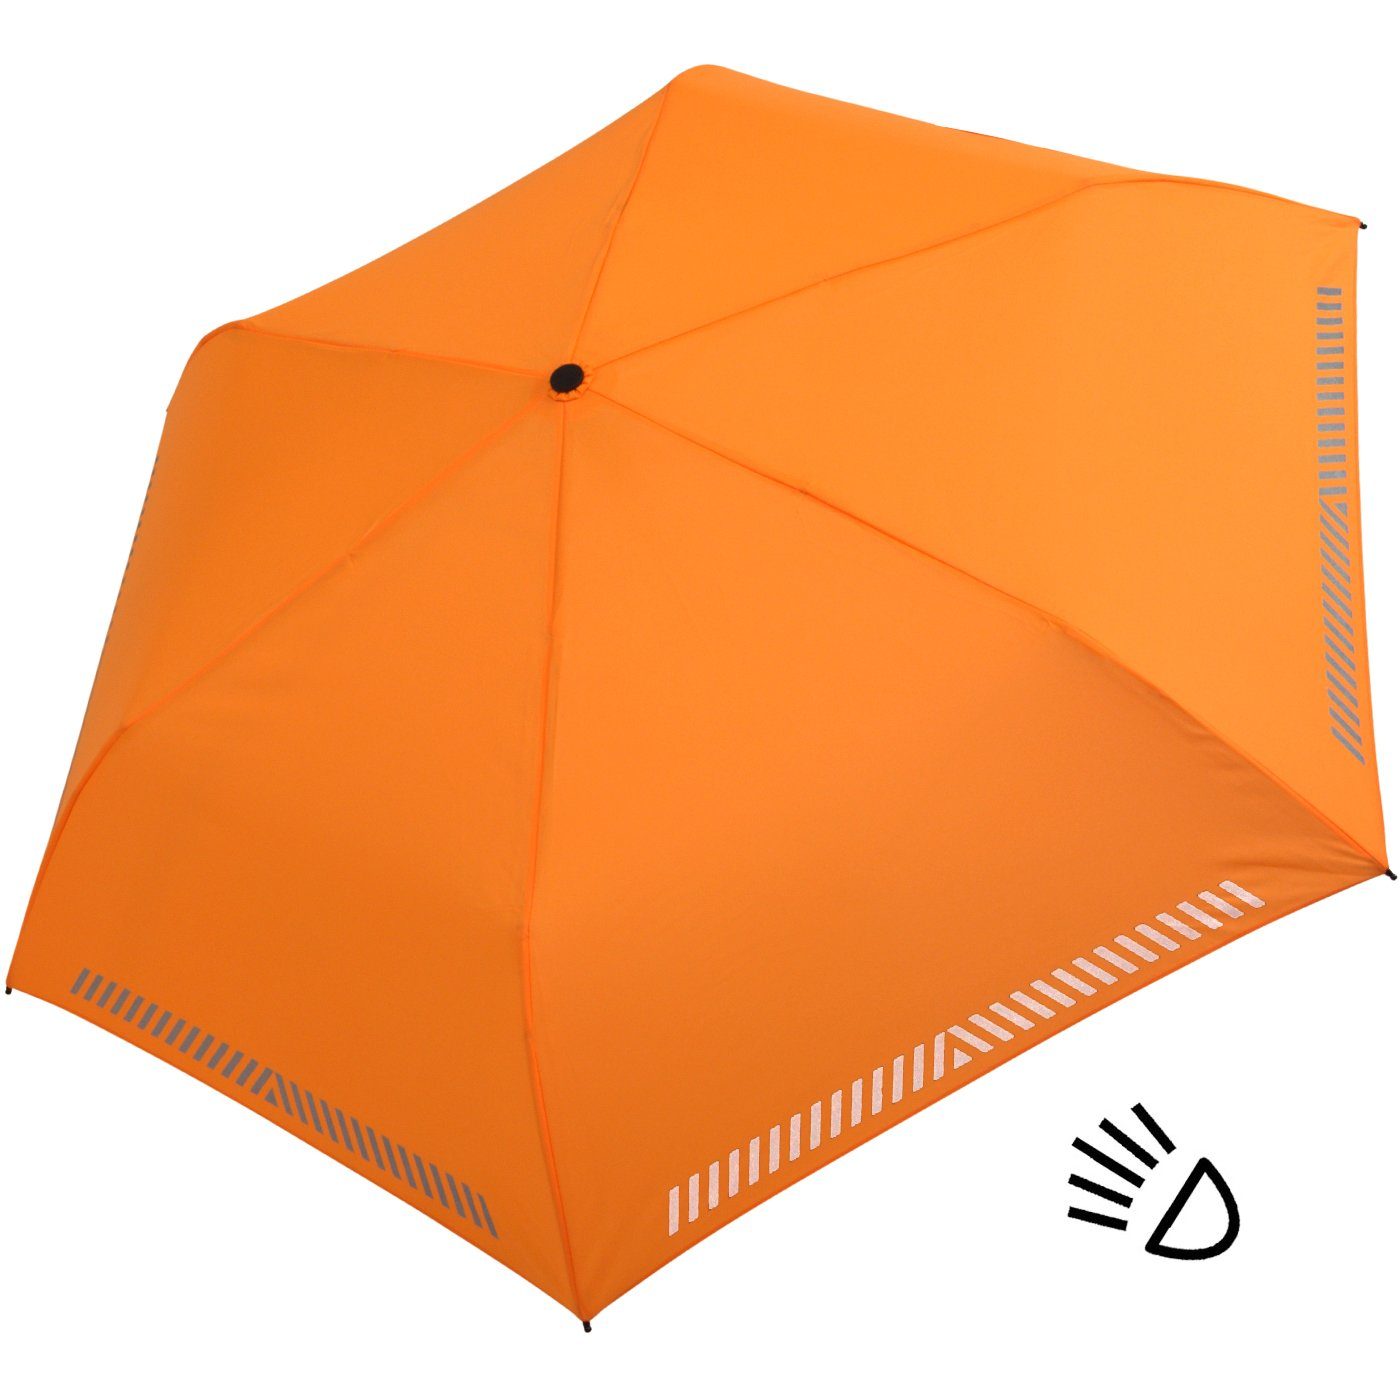 Sicherheit Auf-Zu-Automatik, durch Taschenregenschirm reflektierend, Kinderschirm - orange Reflex-Streifen mit neon iX-brella